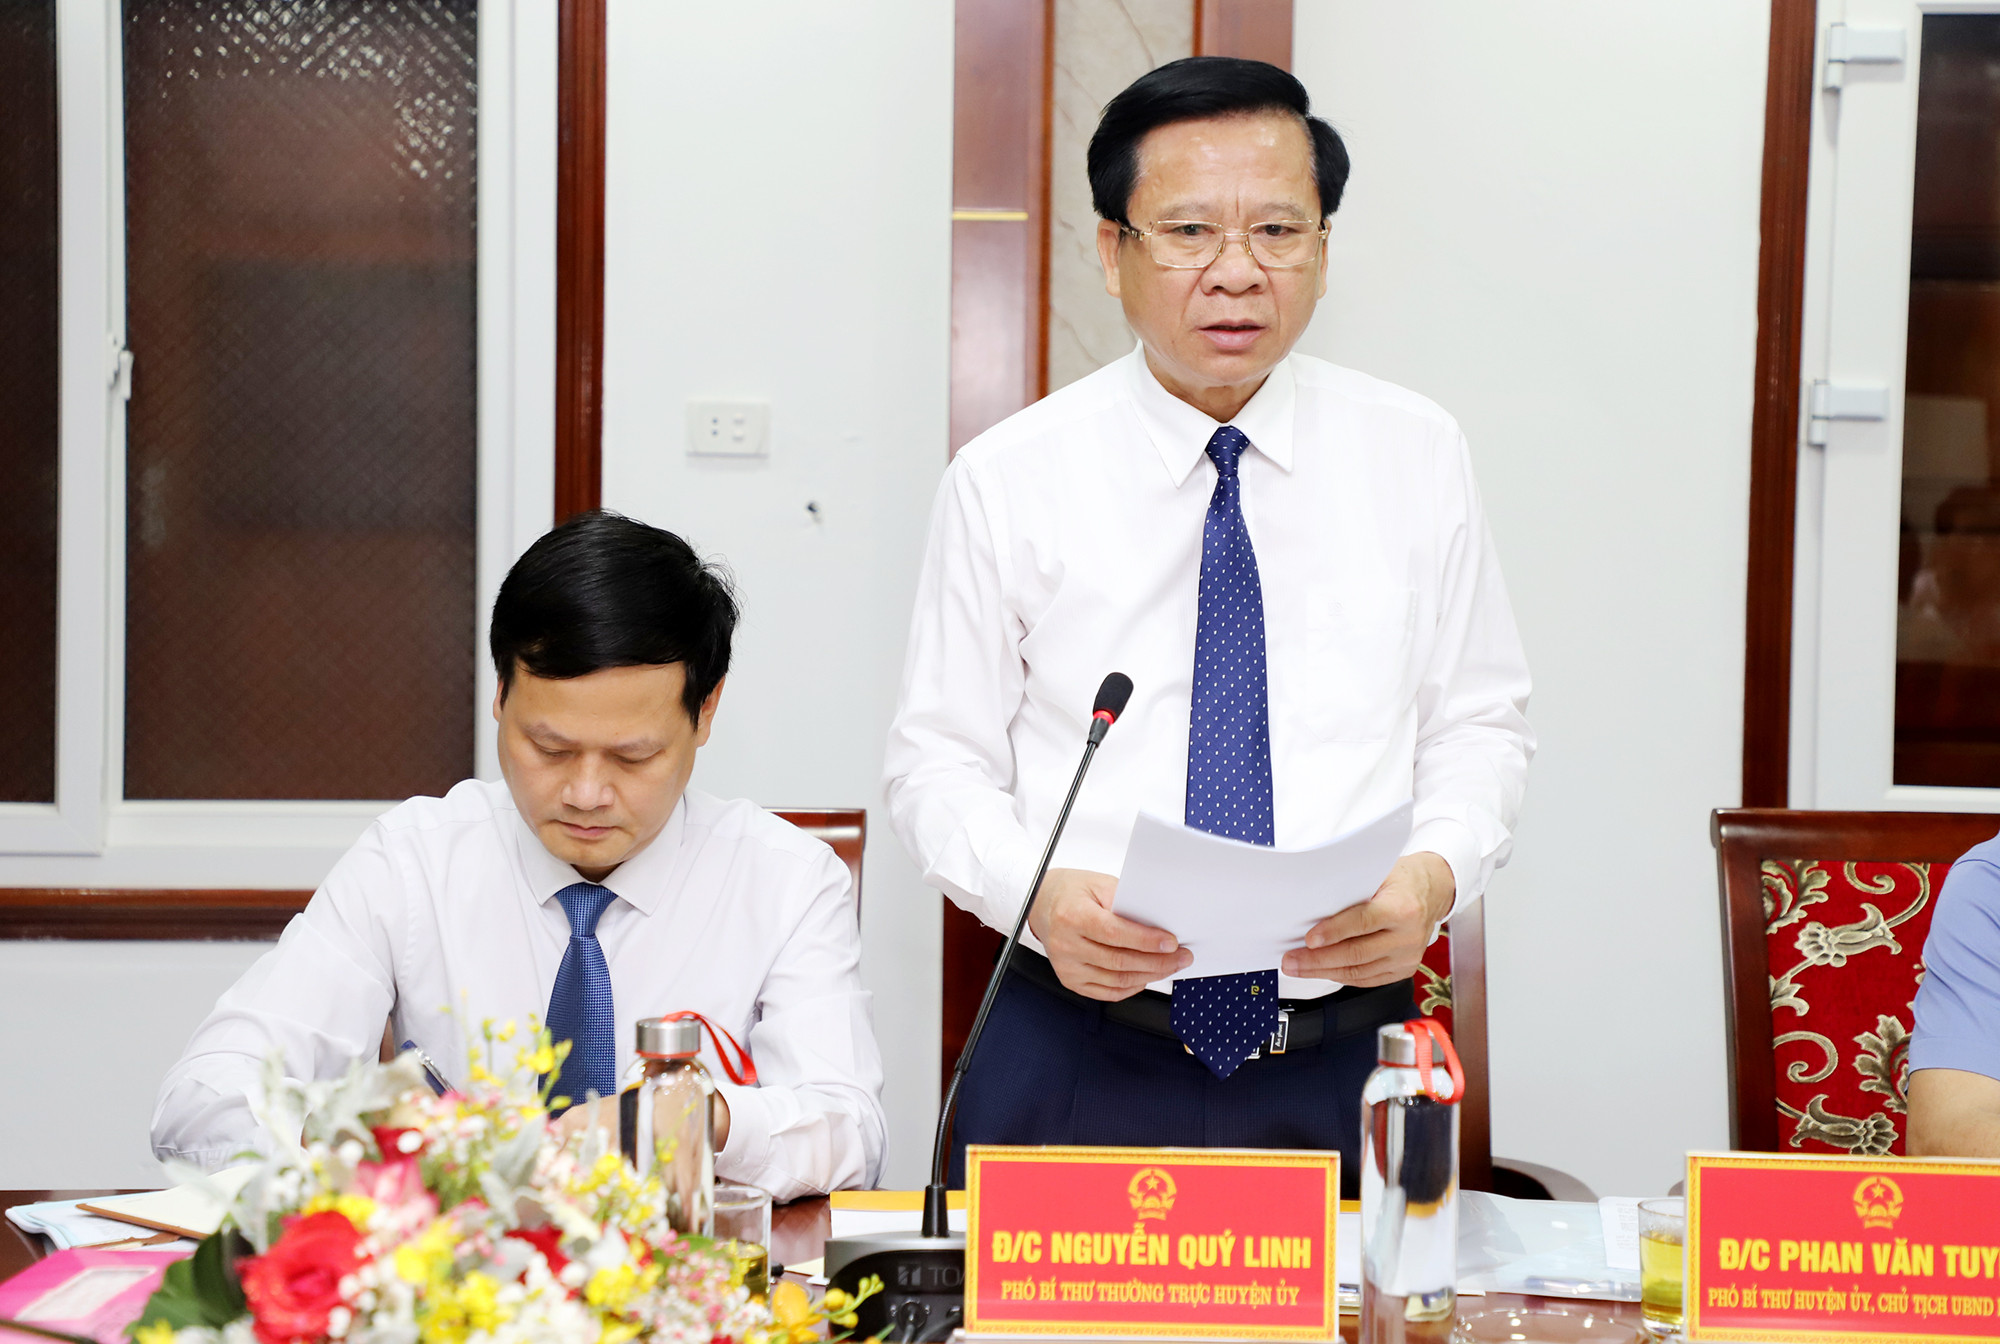 Đồng chí Phan Văn Tuyên – Phó Bí thư Huyện ủy, Chủ tịch UBND huyện Yên Thành báo cáo. Ảnh: Phạm Bằng